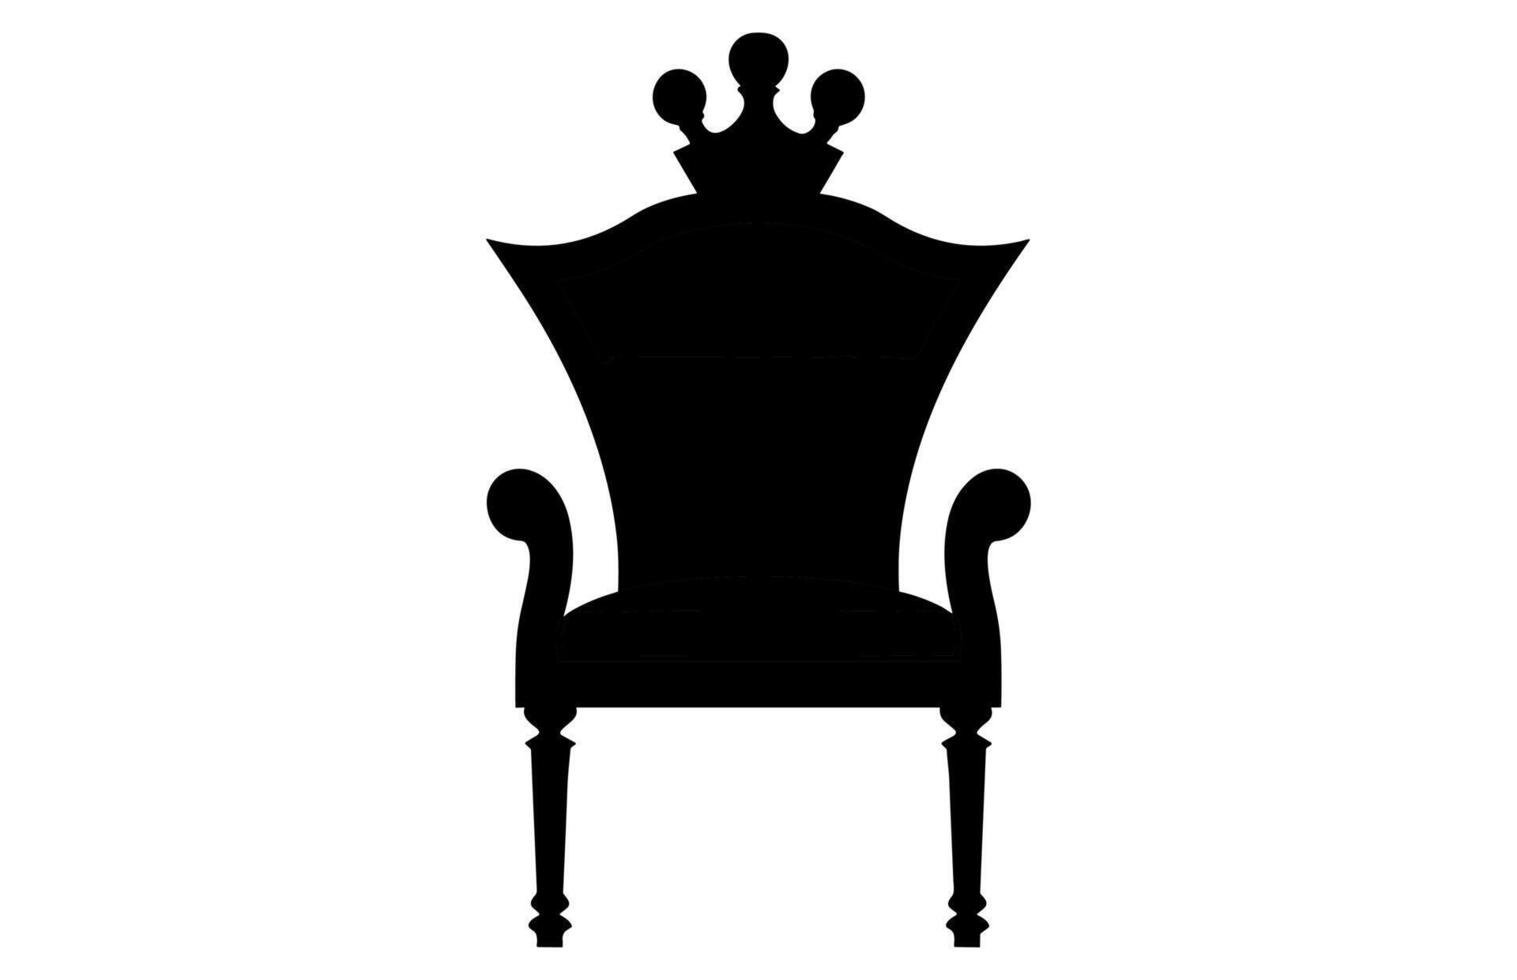 rei trono silhueta, real trono cadeira vetor, poltrona com coroa do rei. vetor